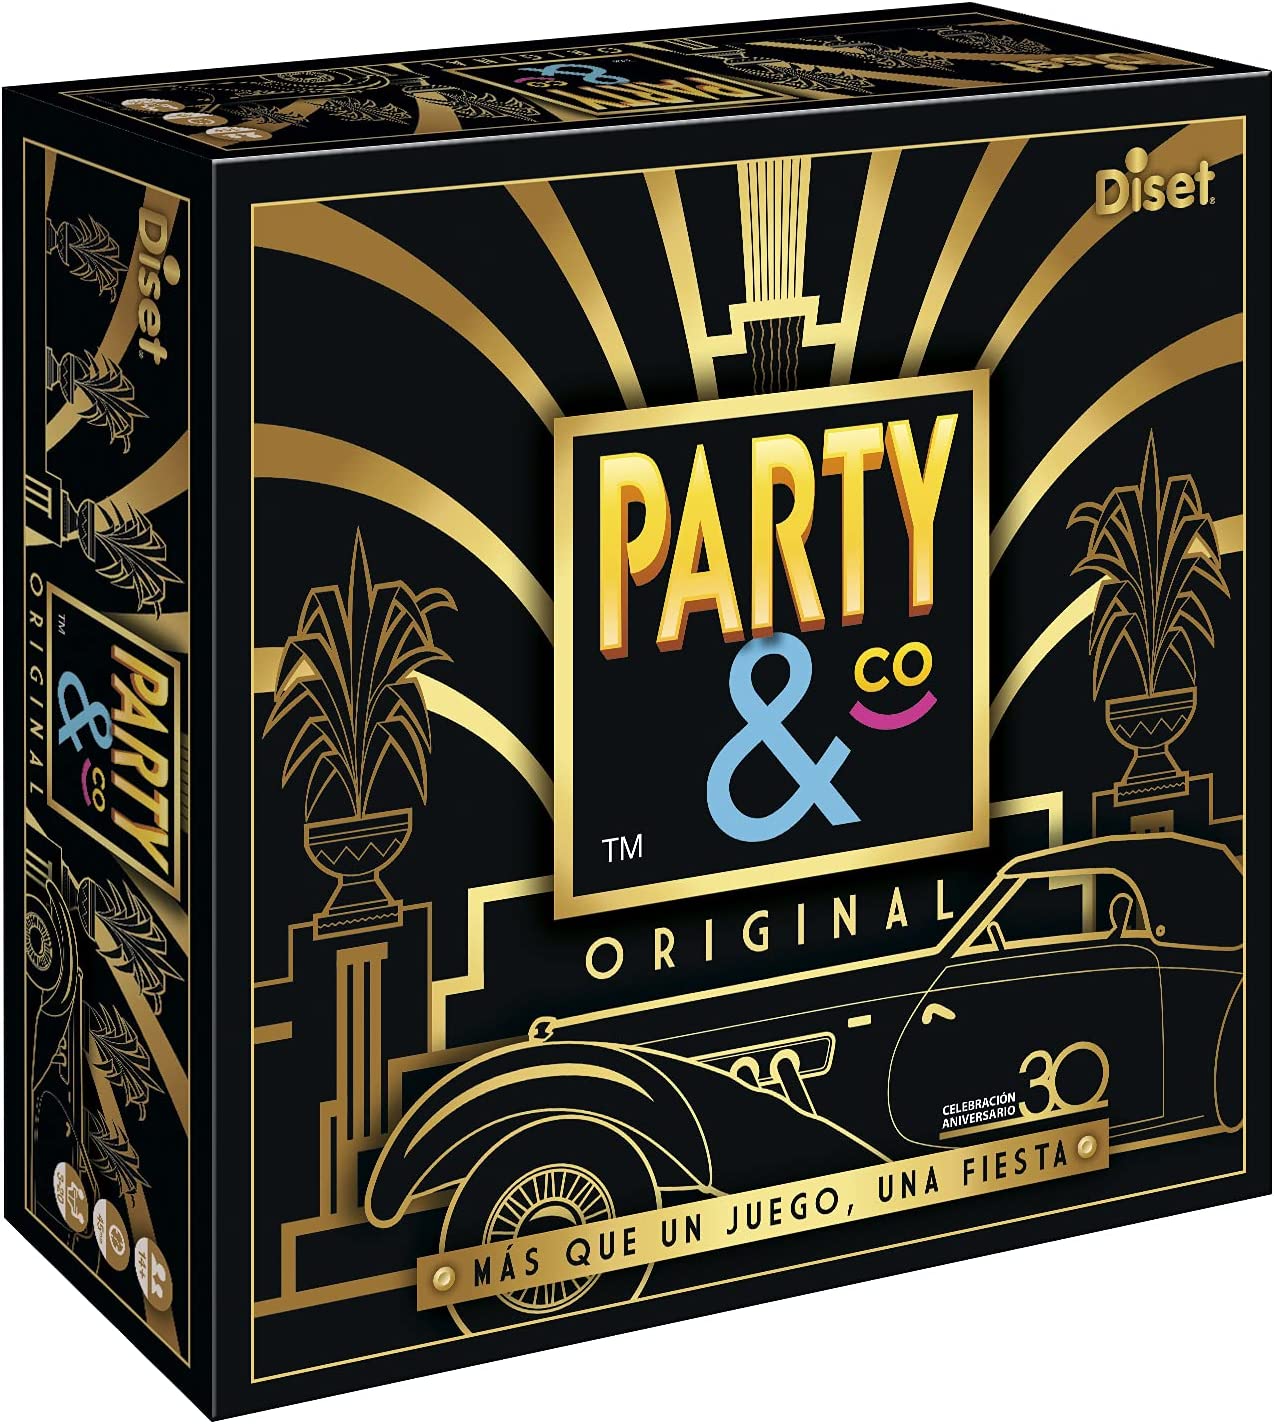 Ver categoría de party & co original 30 aniversario